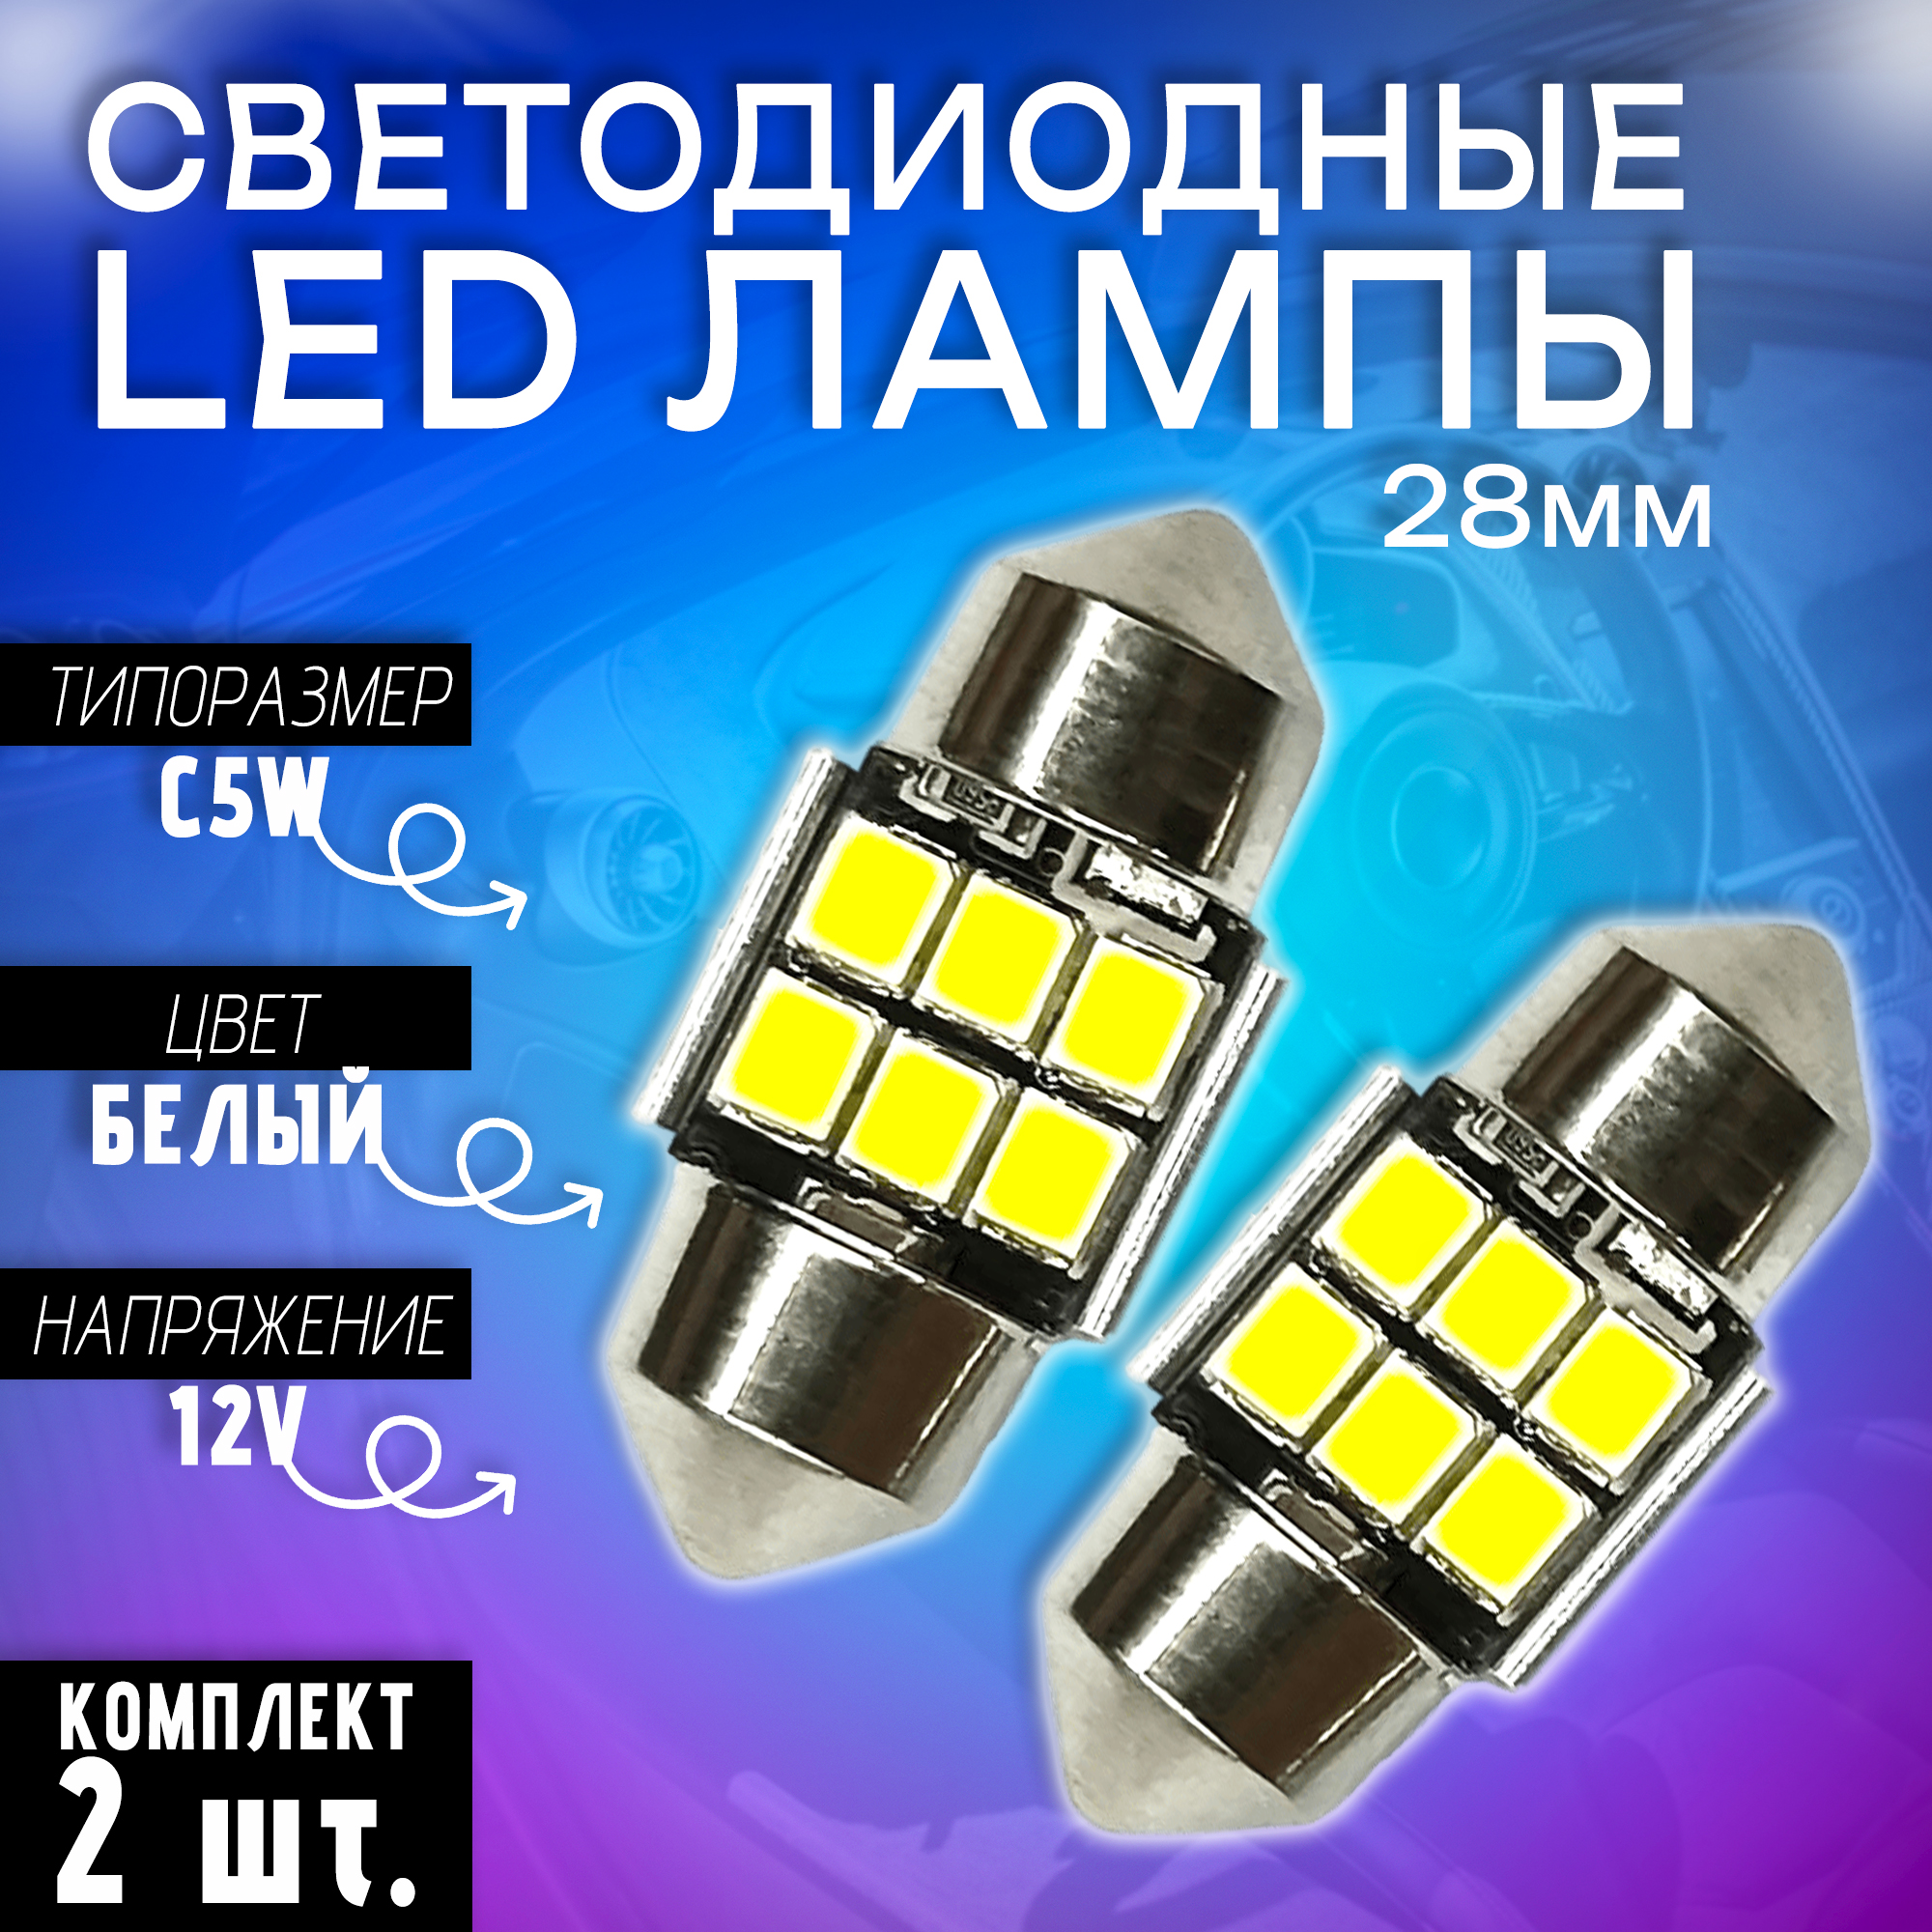 Светодиодные автомобильные LED лампы TaKiMi SJ-2835-6SMD 28mm,Белый,12V, Комплект (2шт.)